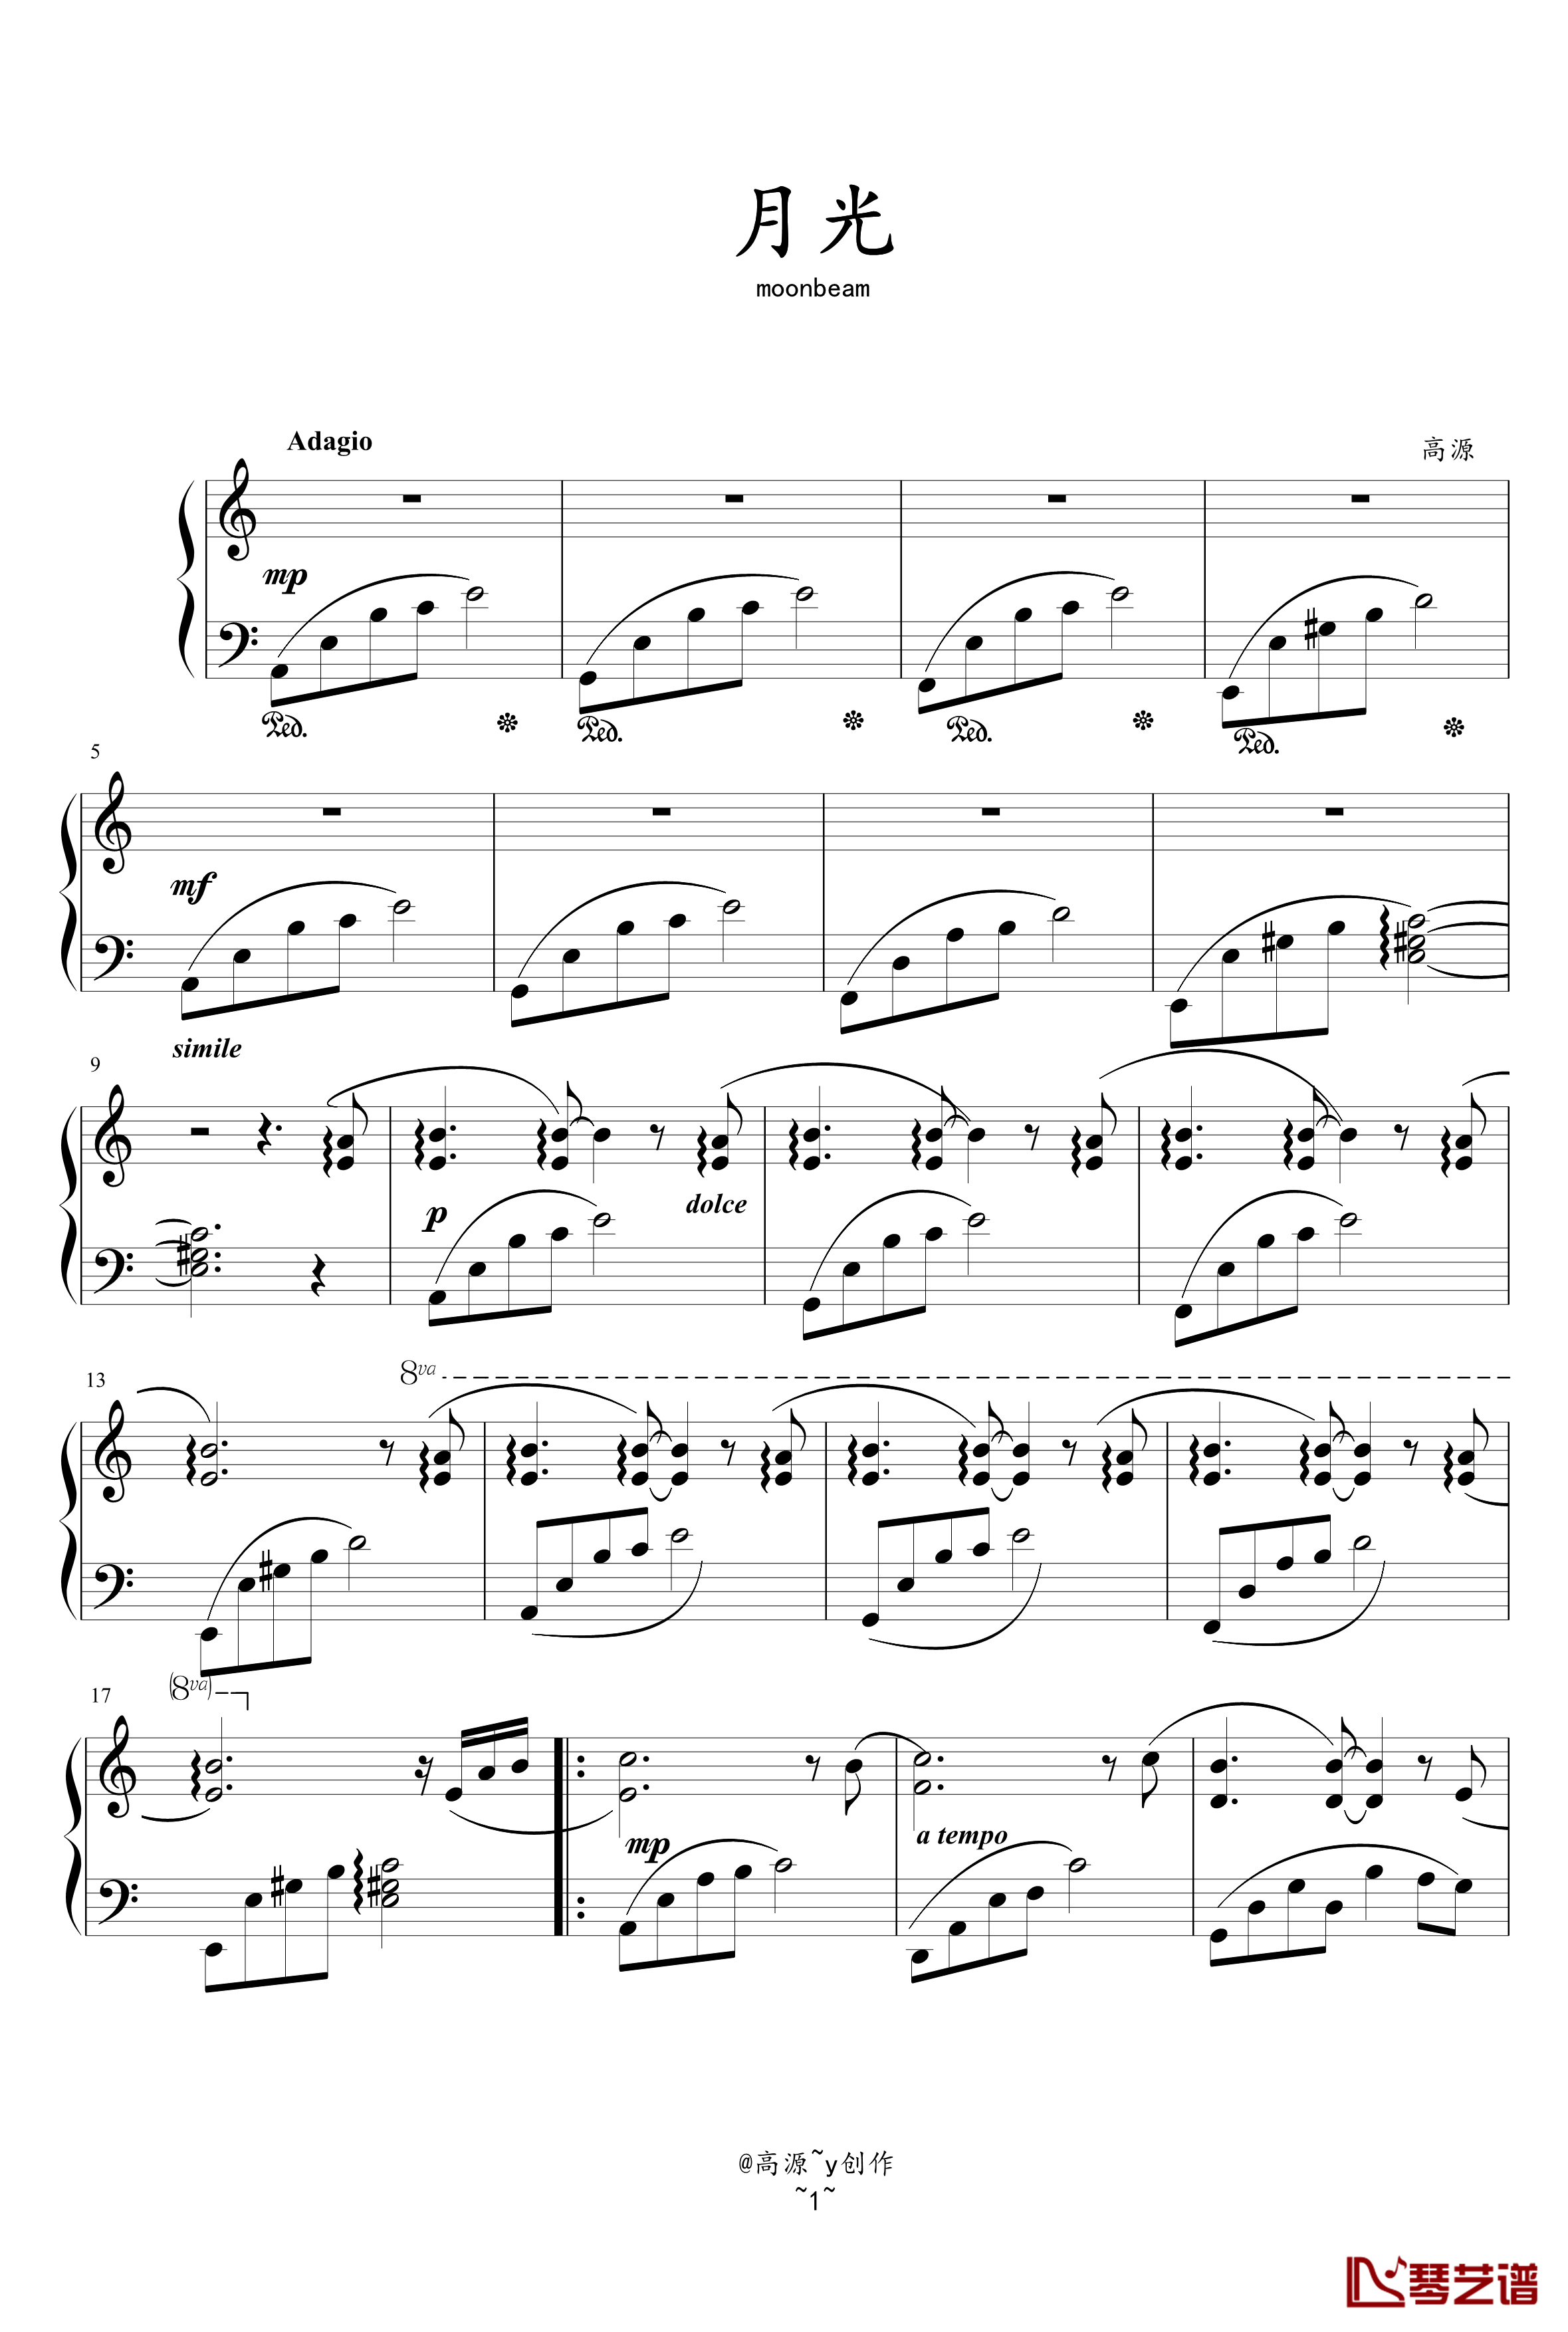 月光钢琴曲钢琴谱-高源1